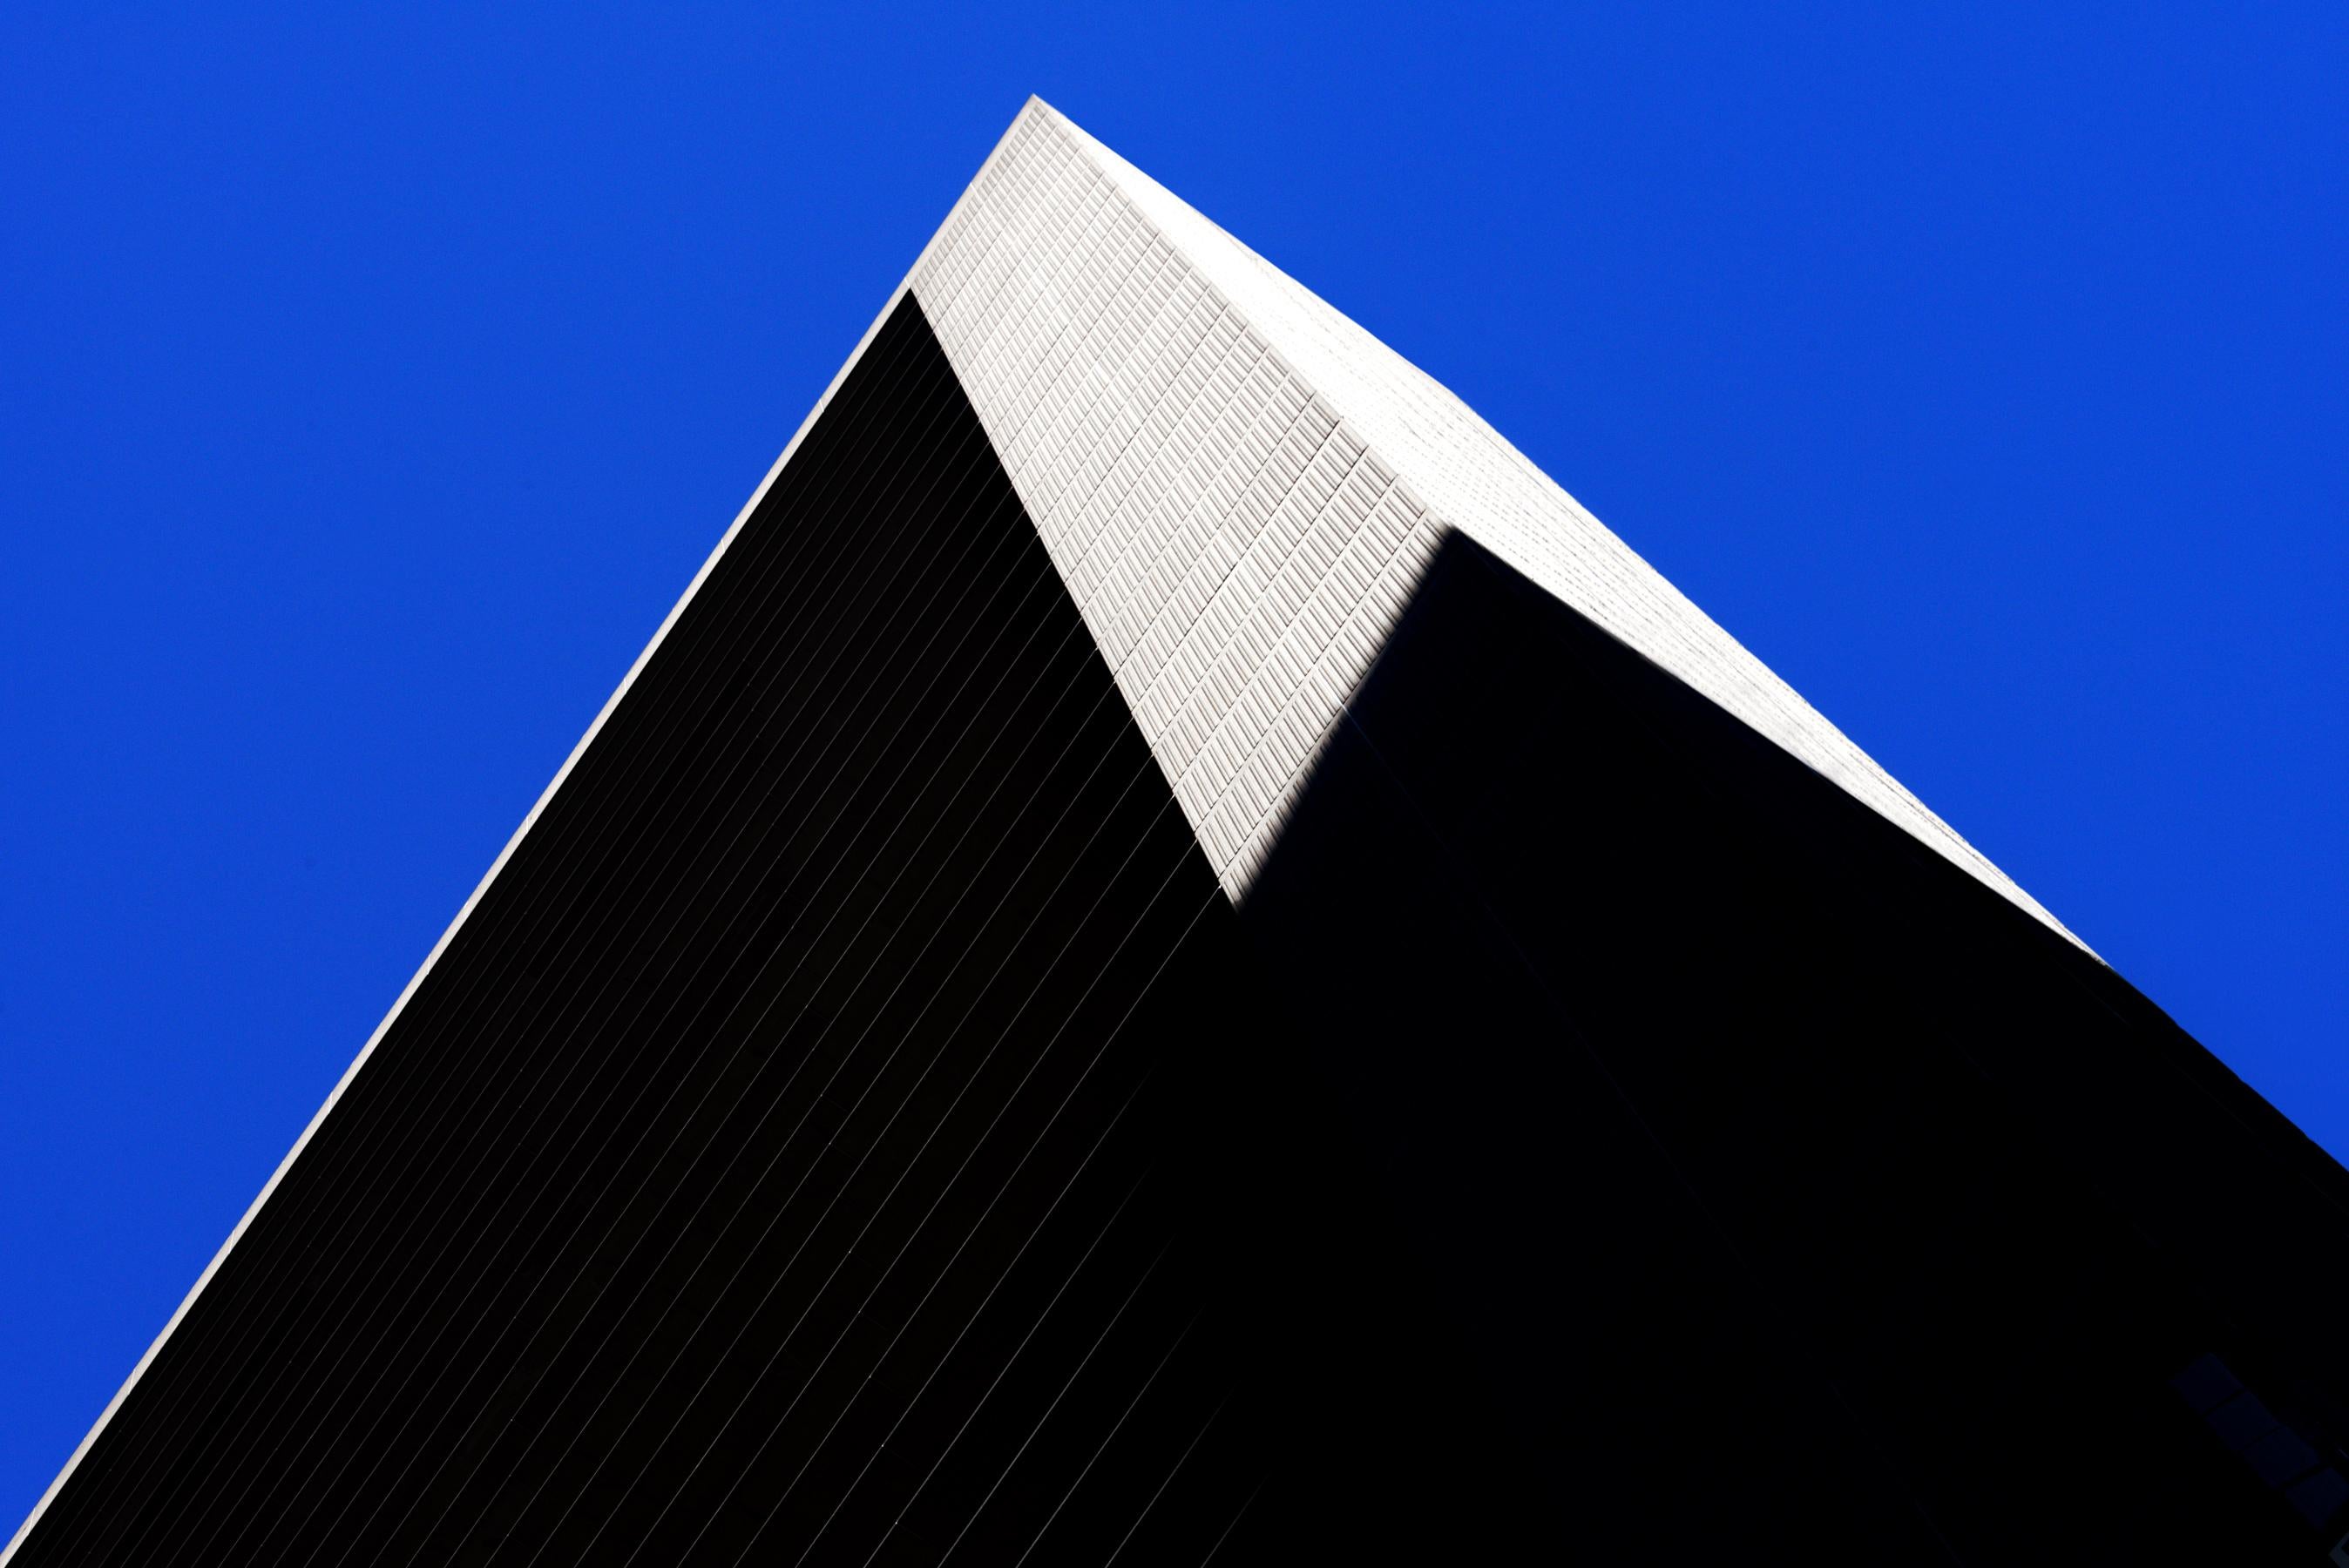 « Great Pyramid of Manhattan », photographie, ville, architecture, géométrie, ciel bleu